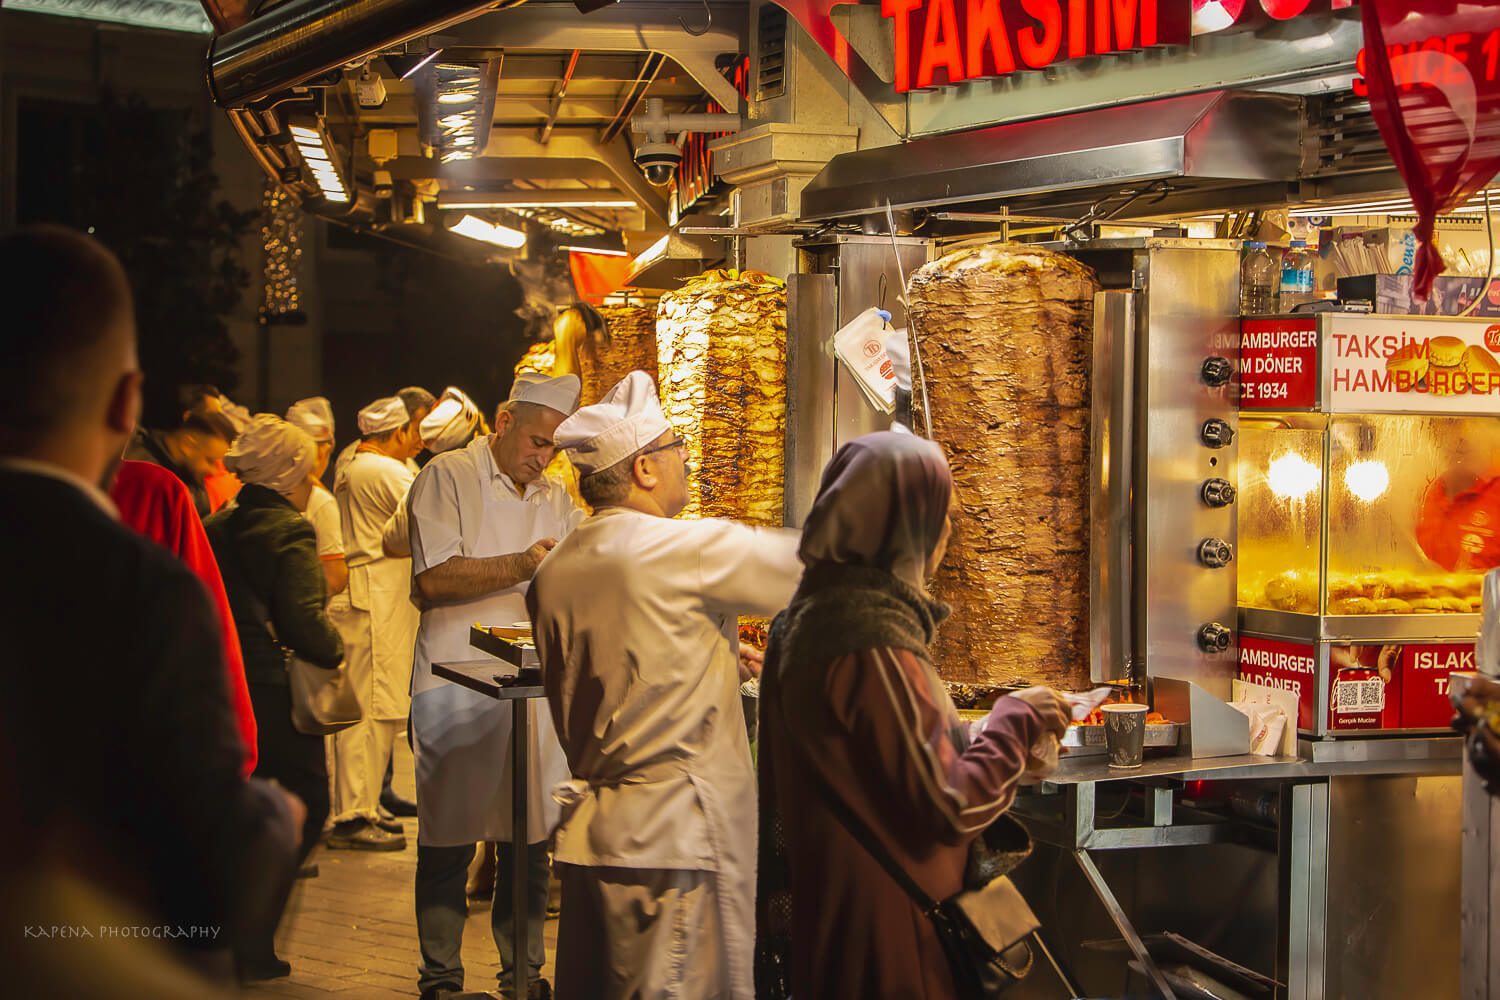 Istanbul Street Food